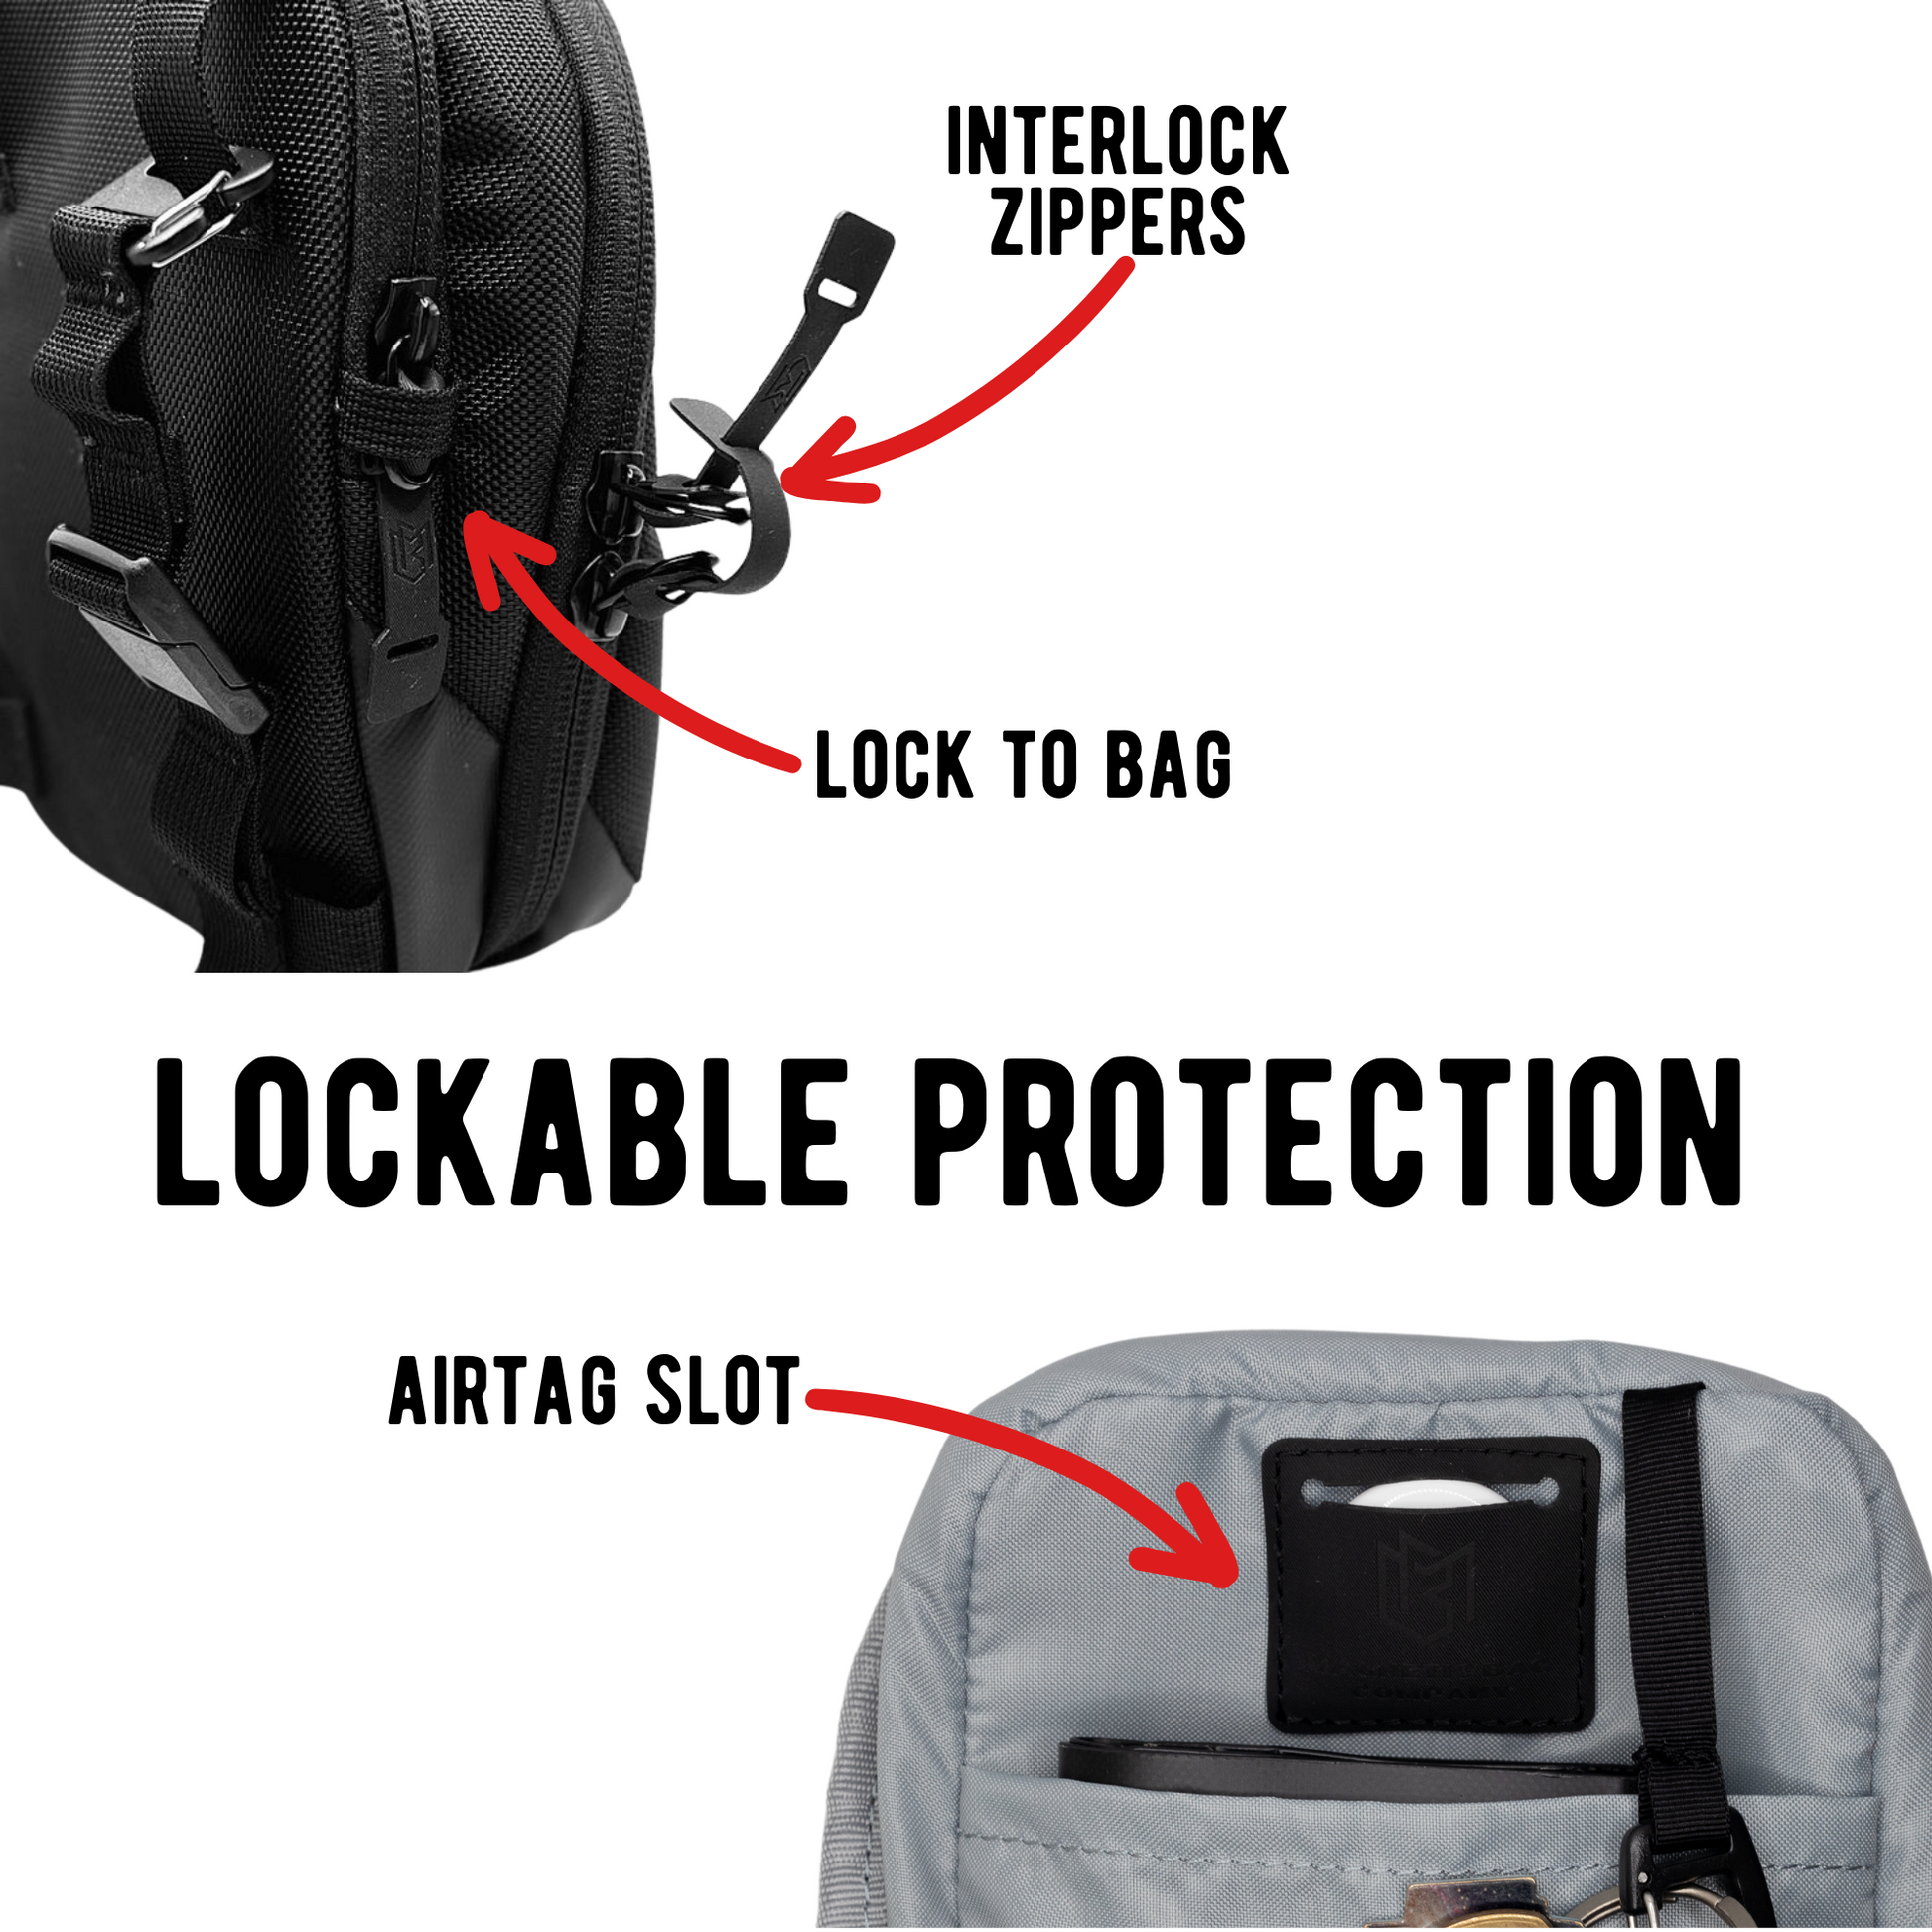 (WD5623)  Handbags Cross Body Bag Magnet Side Bag for